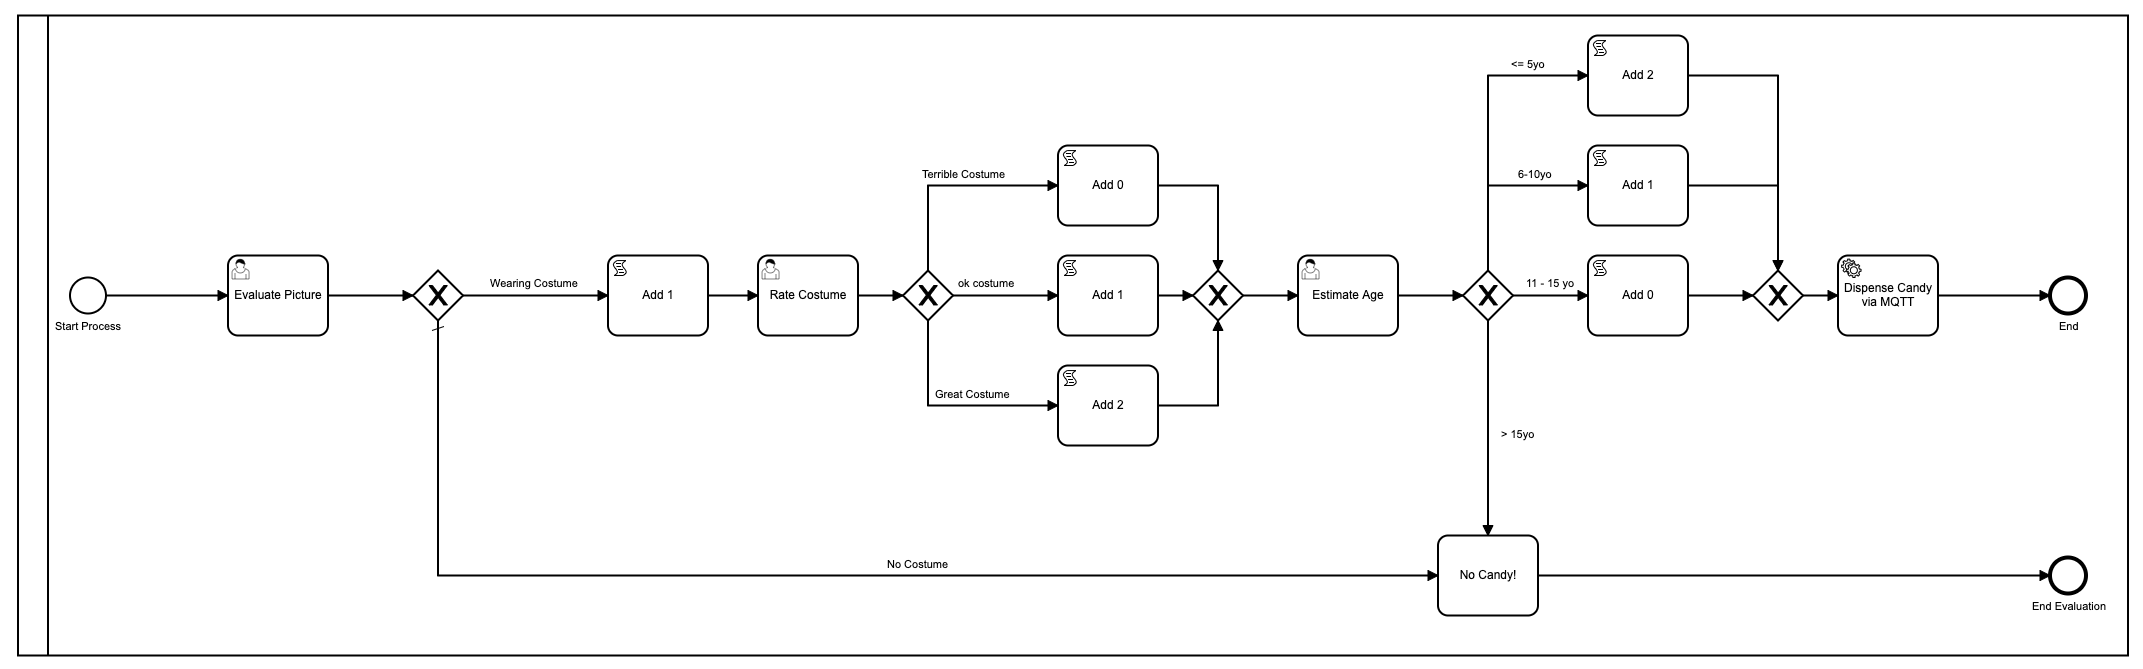 Modelo BPMN con múltiples pasos y 3 tareas humanas